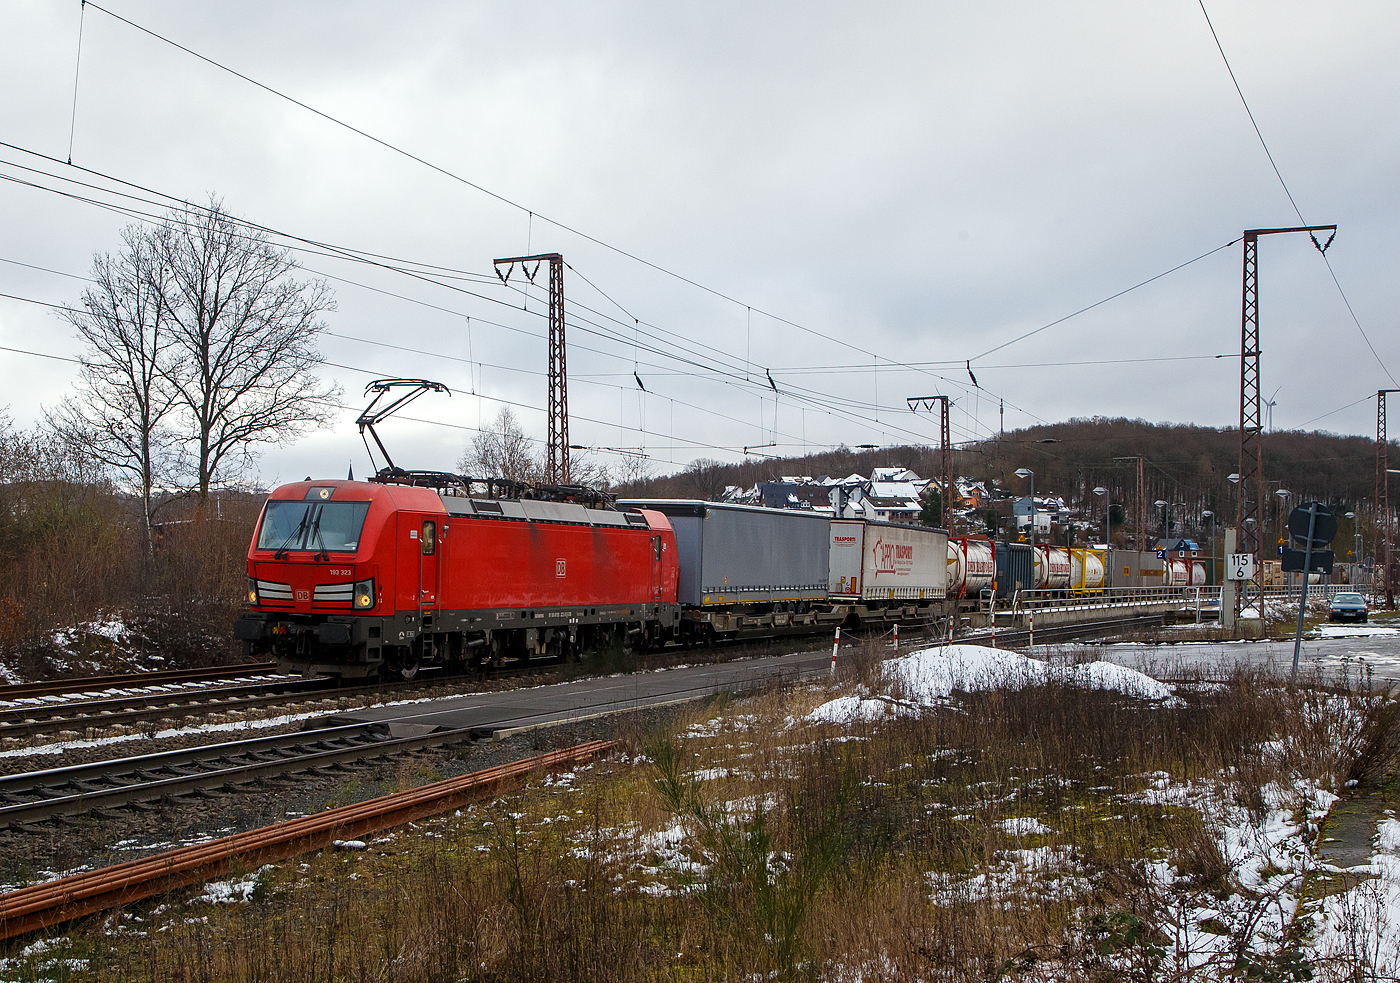 Die 193 323-3 (91 80 6193 323-3 D-DB) der DB Cargo AG fährt am 27.01.2023 mit einem „HUPAC“ KLV-Zug durch Rudersdorf (Kr. Siegen) in Richtung Siegen. Hier befährt der Zug die Dillstrecke (KBS 445) von dieser geht es bei Siegen-Ost auf die Siegstrecke (KBS 460) in Richtung Köln. Weil die Ruhr-Sieg-Strecke (KBS 440) nicht das KV-Profil P/C 400 aufweist, sind solche Züge dort nur bis Kreuztal zum Südwestfalen Container-Terminal möglich.

Die Siemens Vectron MS (200 km/h - 6.4 MW) wurden 2018 von Siemens unter der Fabriknummer 22448 und gebaut, sie hat die Zulassungen für Deutschland, Österreich, Schweiz, Italien und die Niederlande (D/A/CH/I/NL).